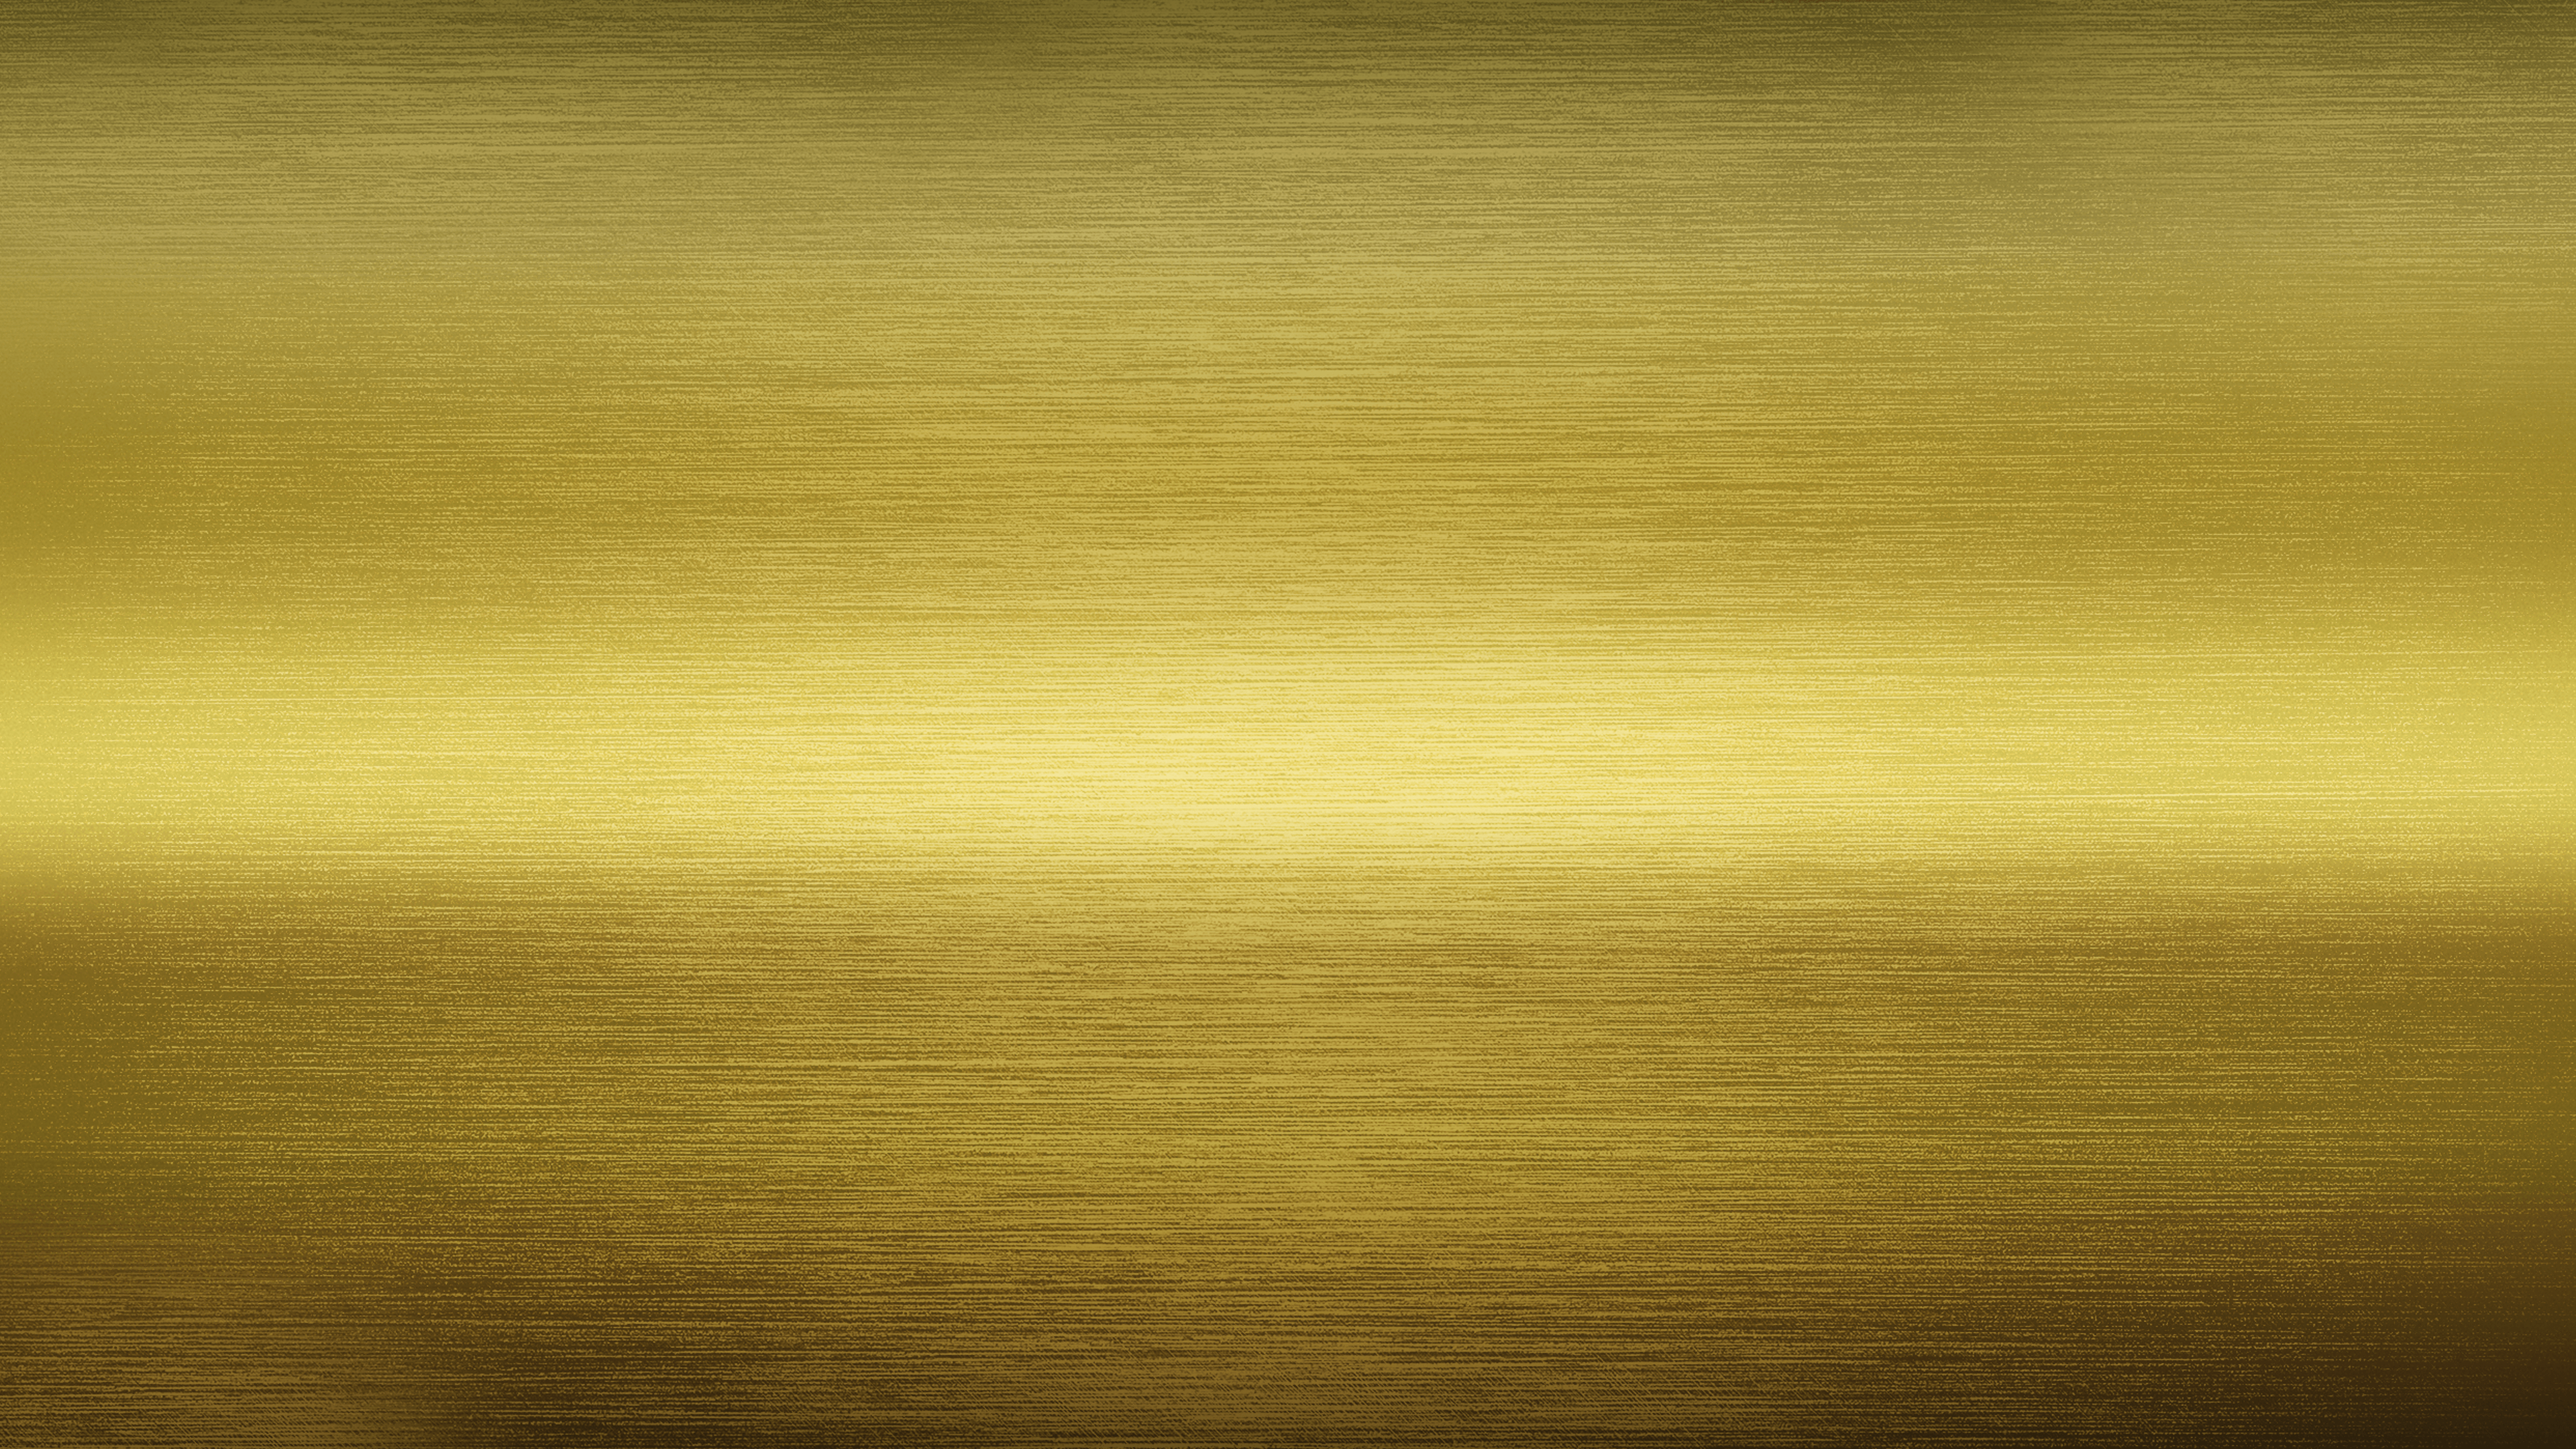 Brushed Gold 4K Wallpaper Free Brushed Gold 4K Background